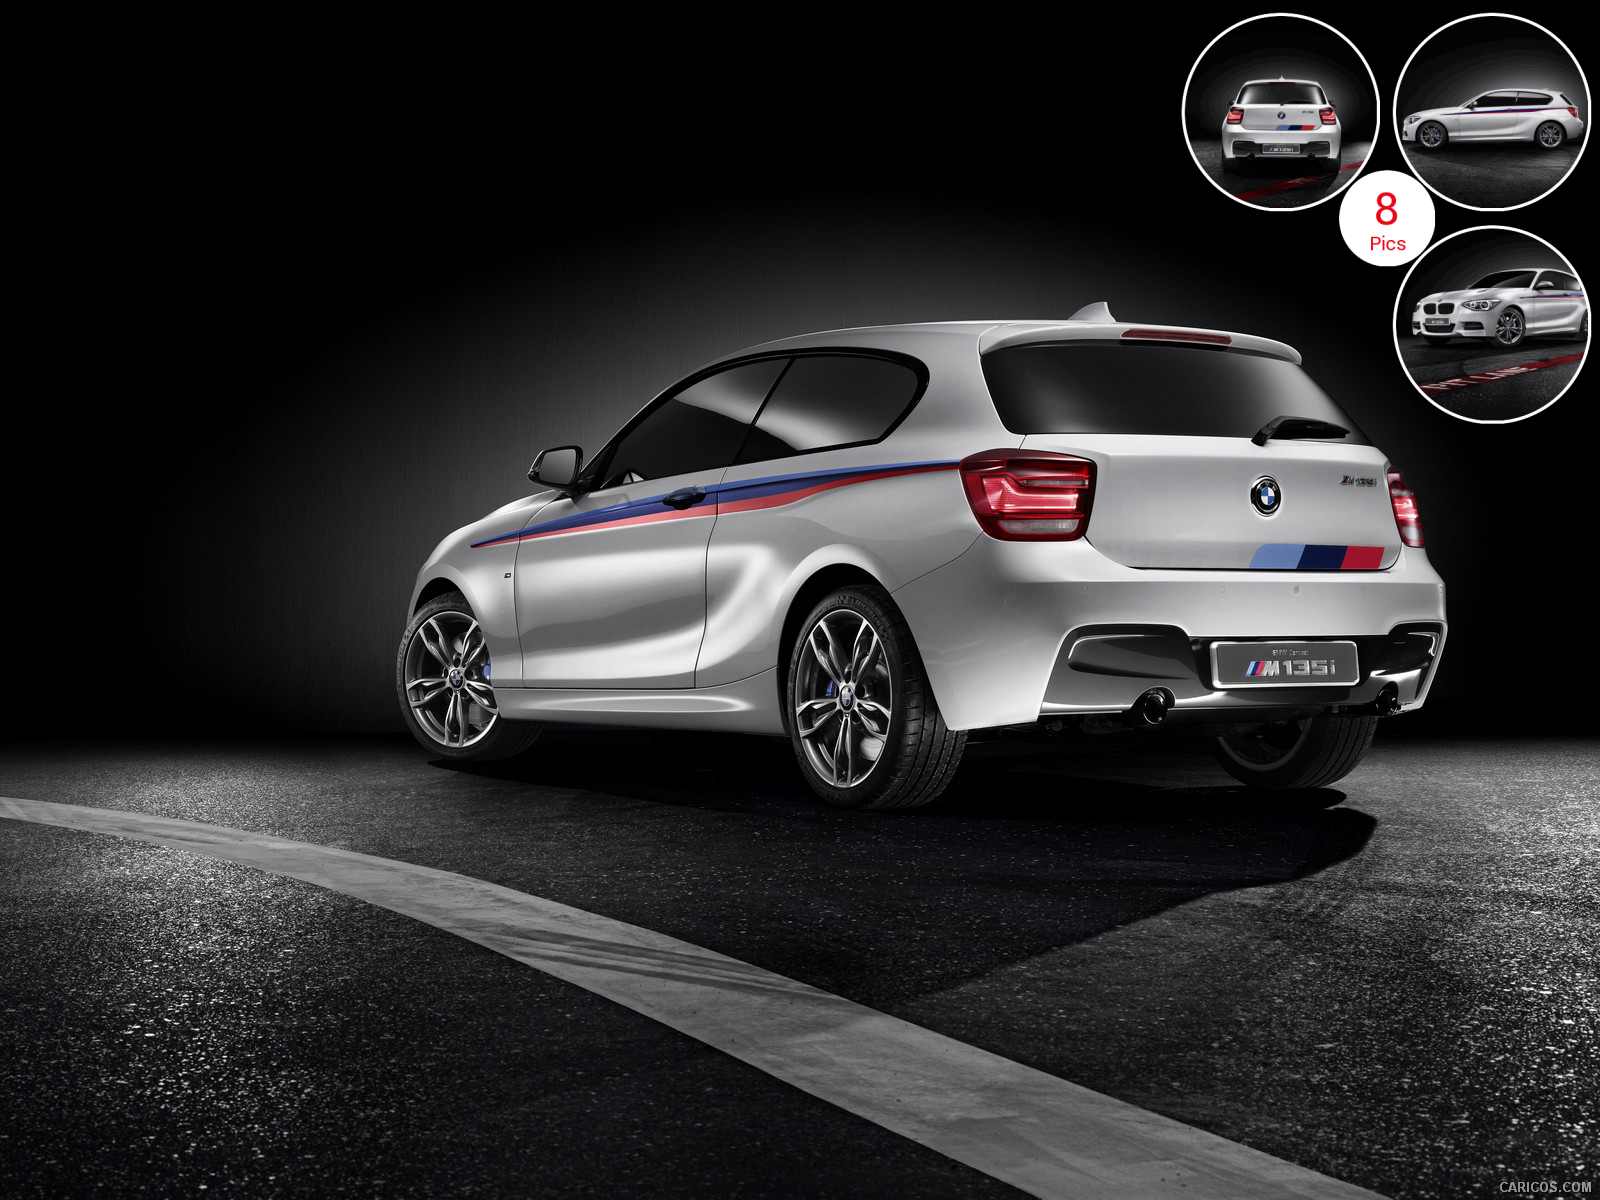 2012 BMW Concept M 135i - Rear | Wallpaper #2 | 1600x1200